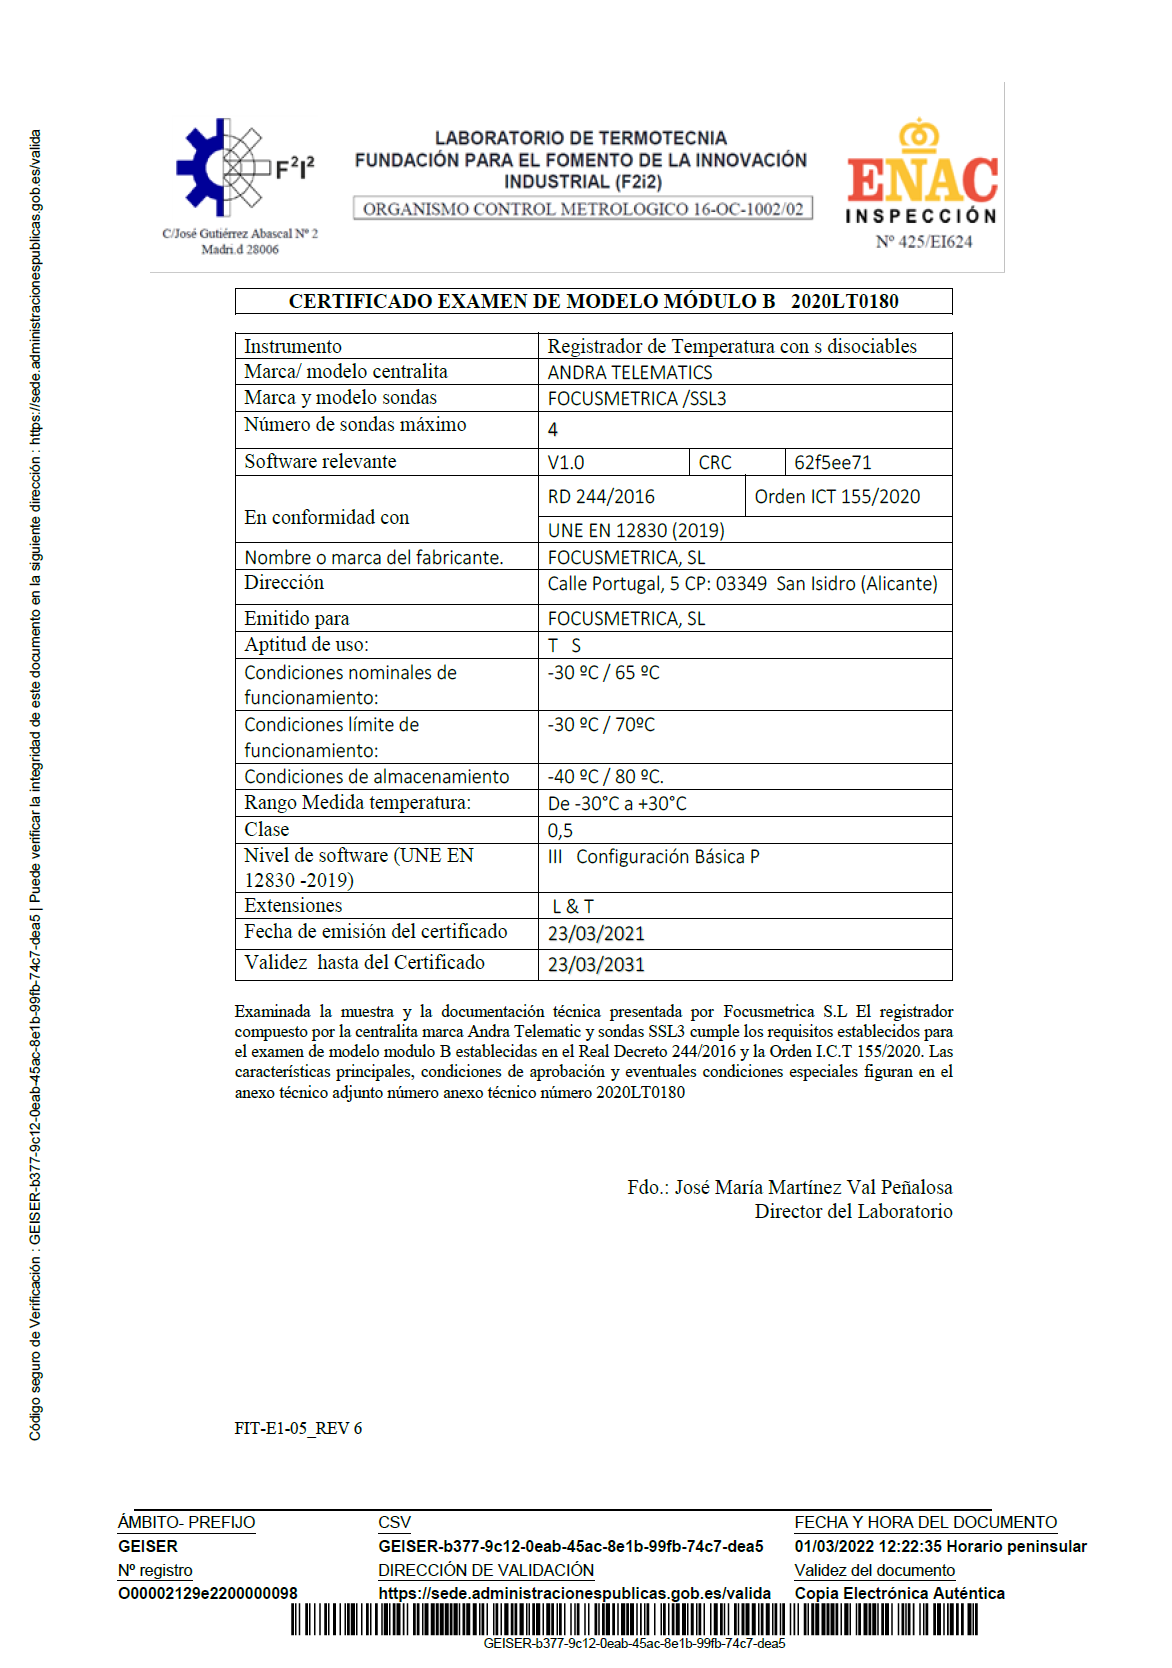 Certificado examen de modelo módulo B nº 2020LT0180